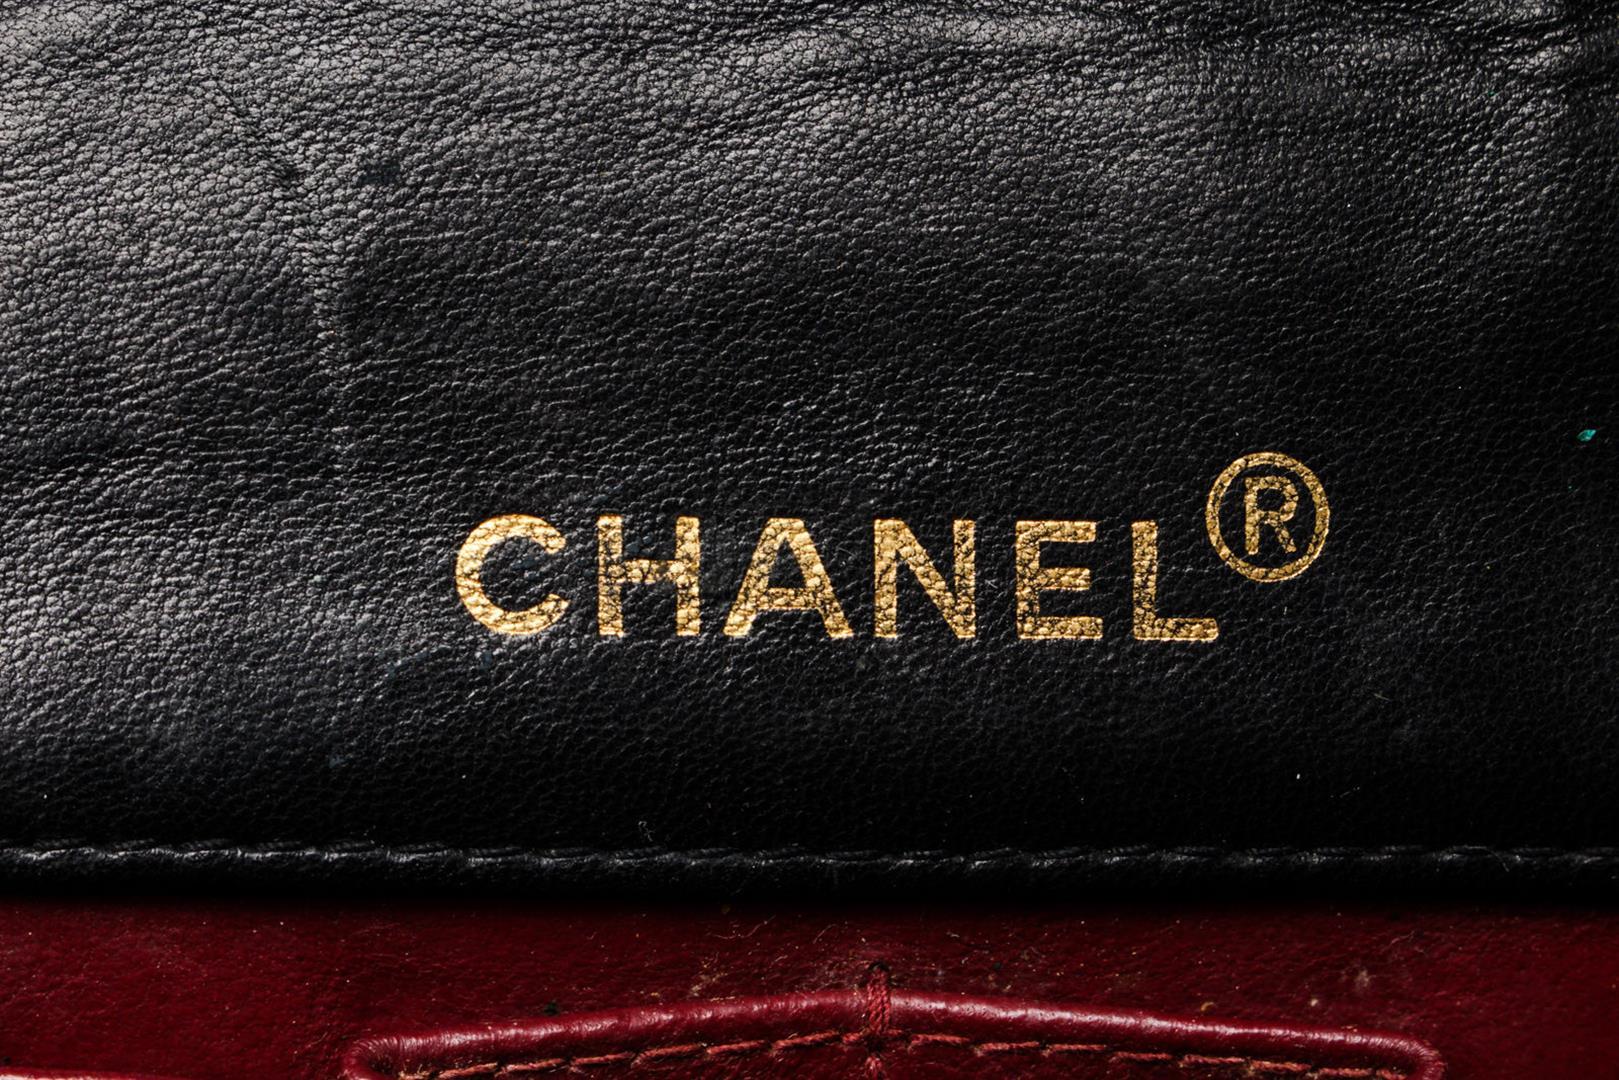 Chanel Black Leather Mini Full Flap Shoulder Bag